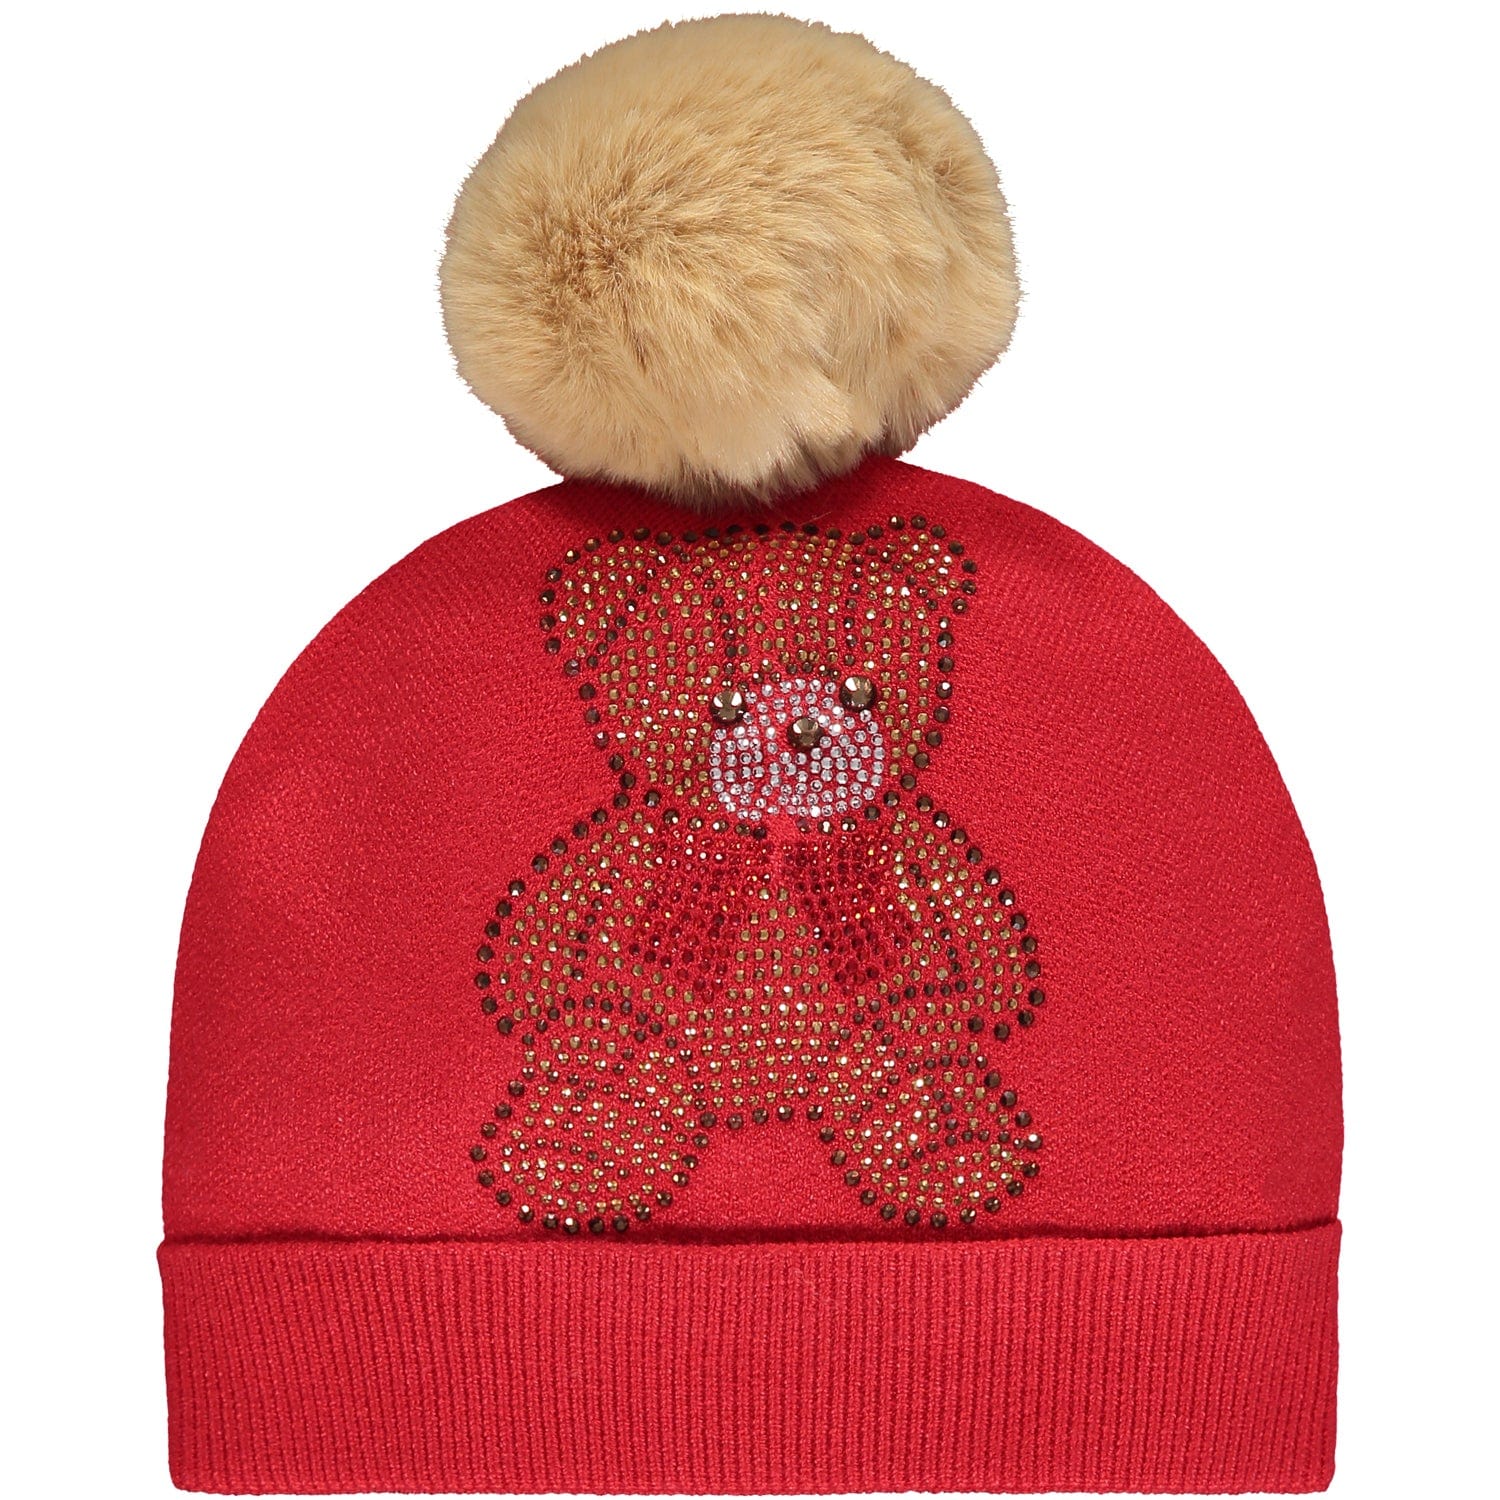 A DEE - Melody Pom Pom Teddy Hat - Red